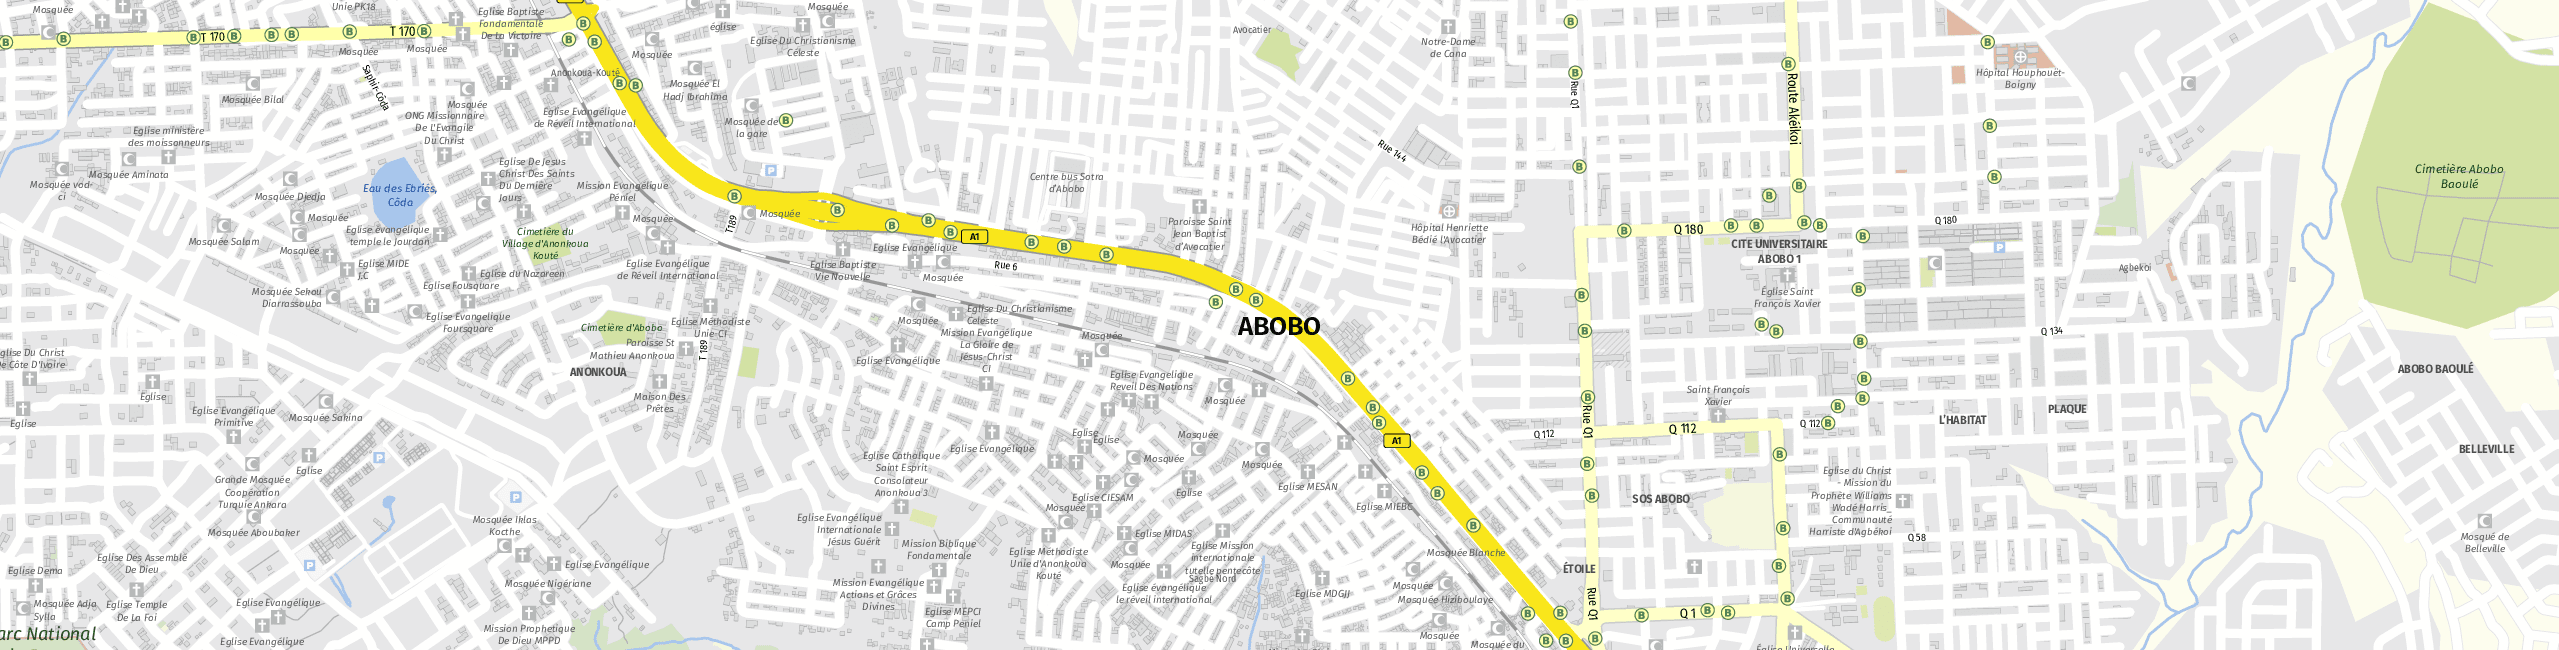 Stadtplan Abobo zum Downloaden.